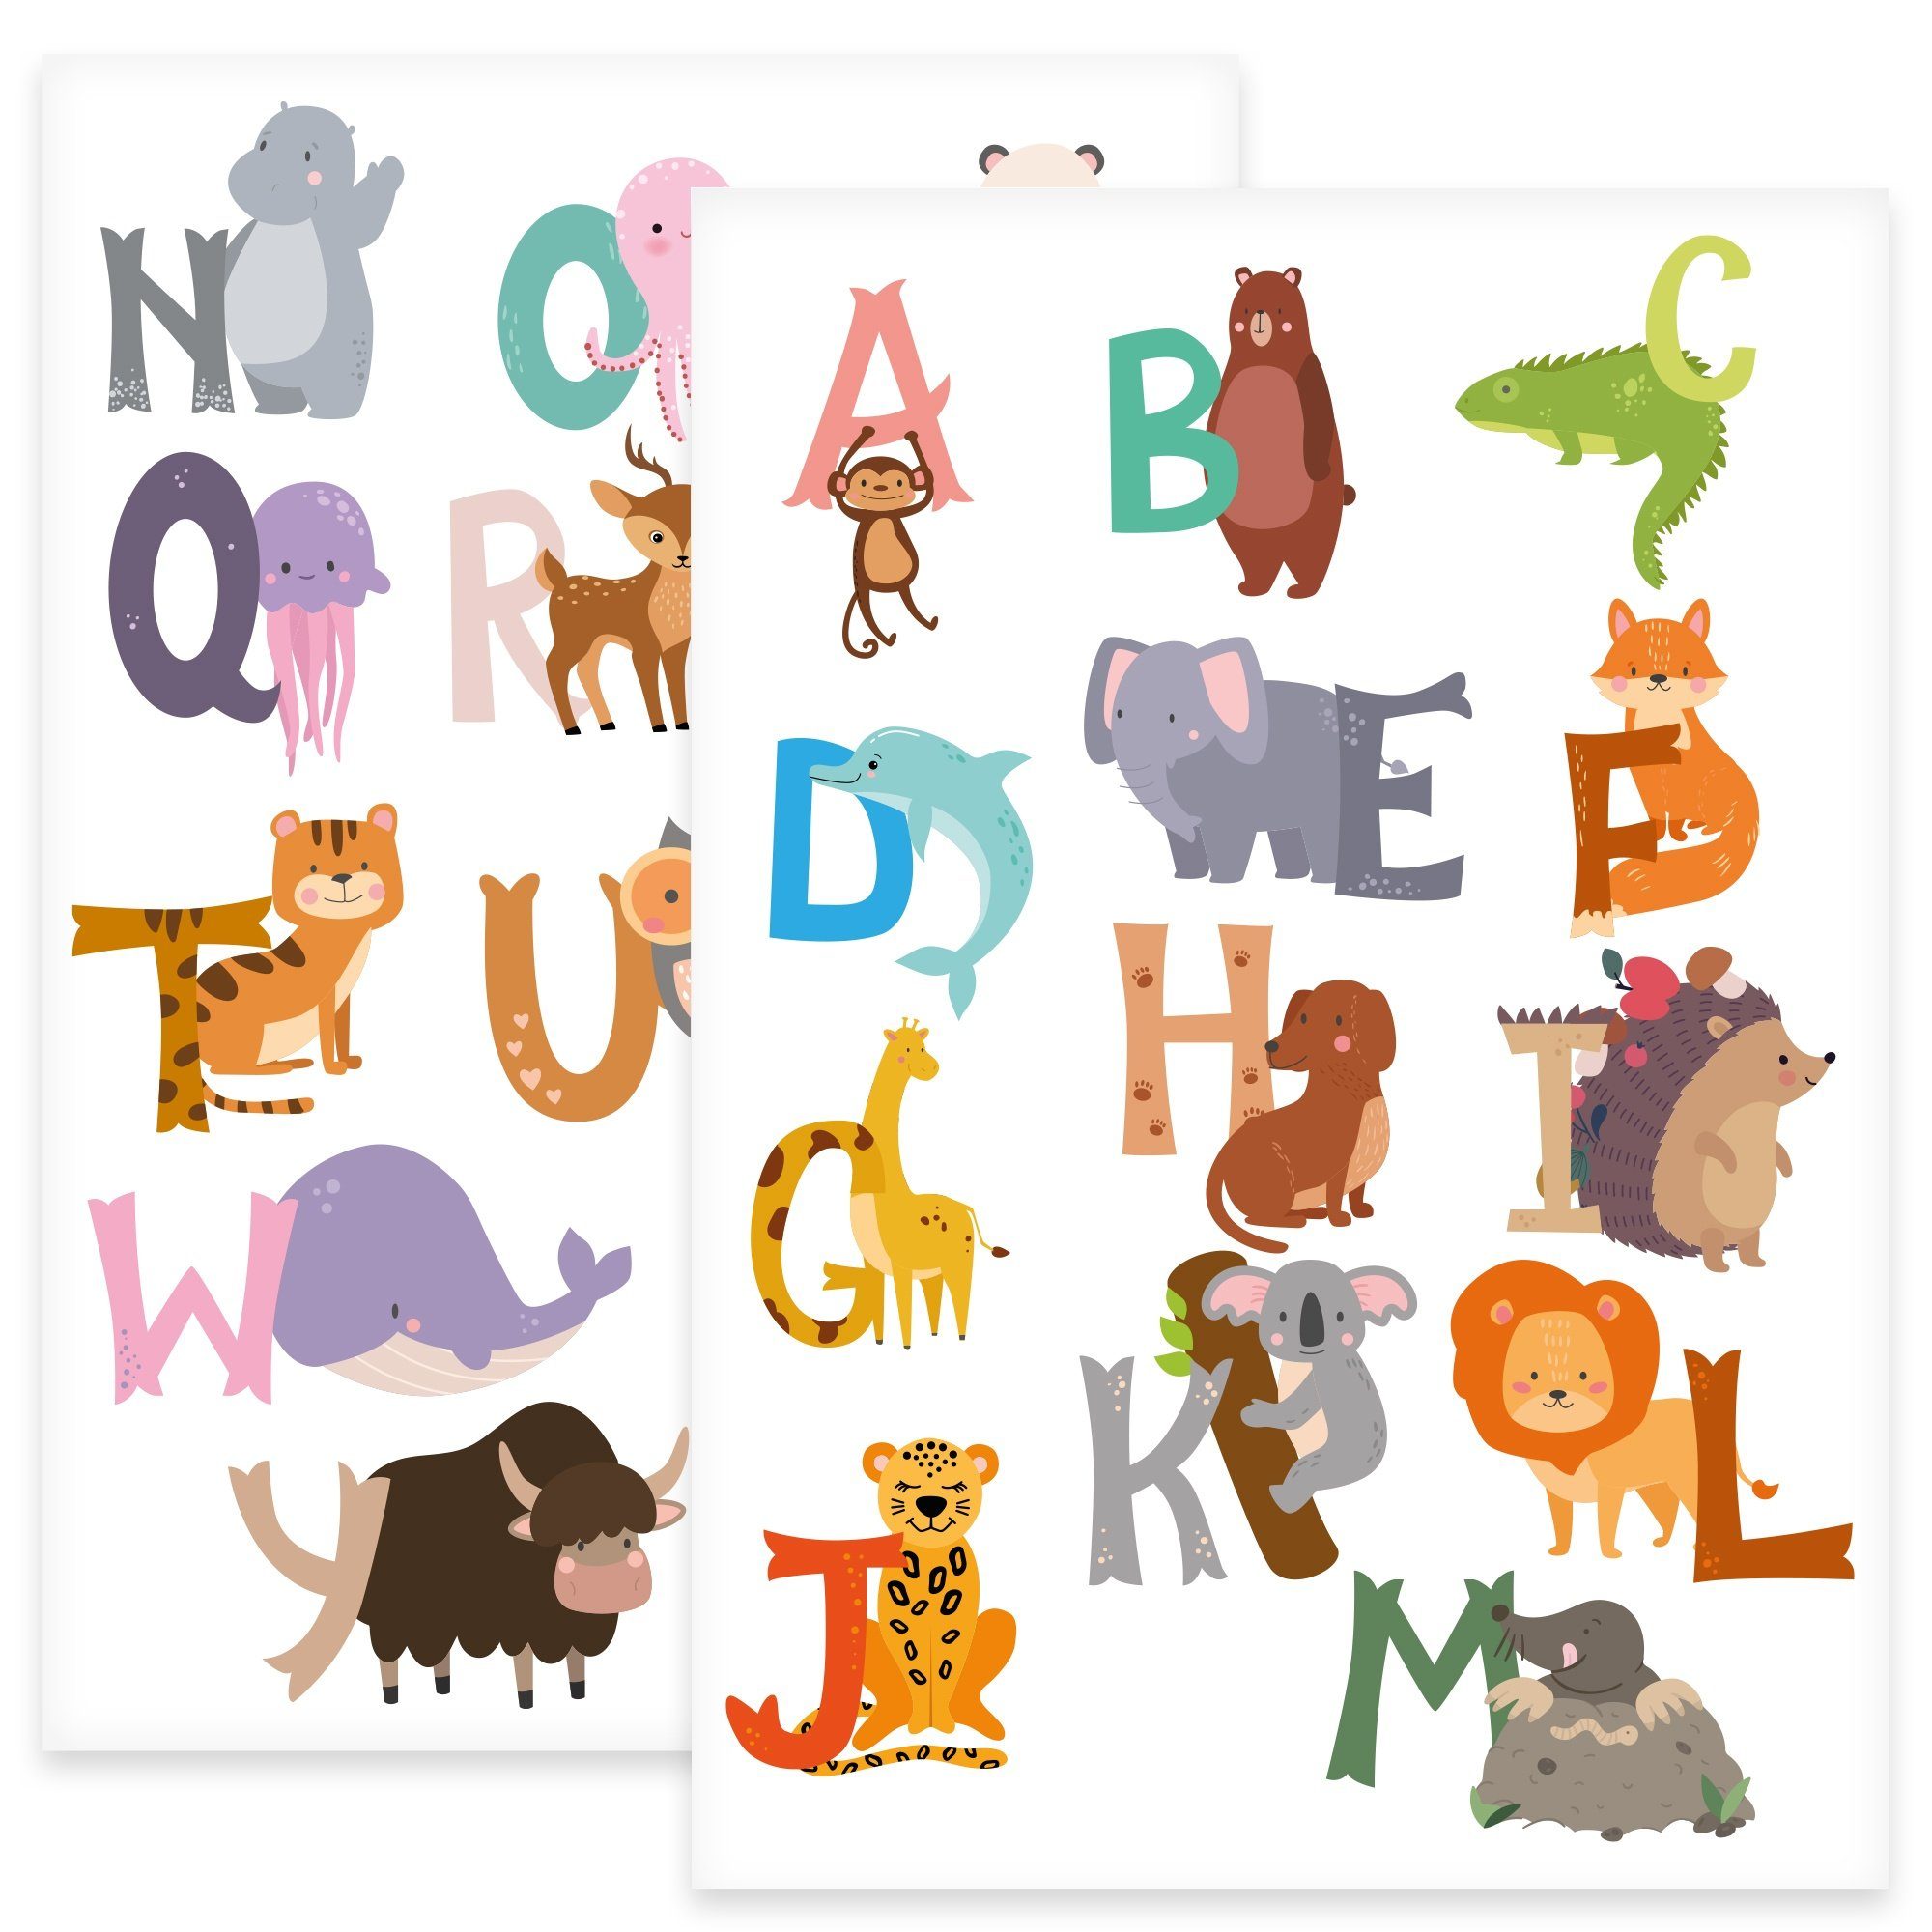 GRAVURZEILE Wandtattoo - Tier Alphabet Design - Wandtattoo zum Alphabet lernen - Kinderzimmer